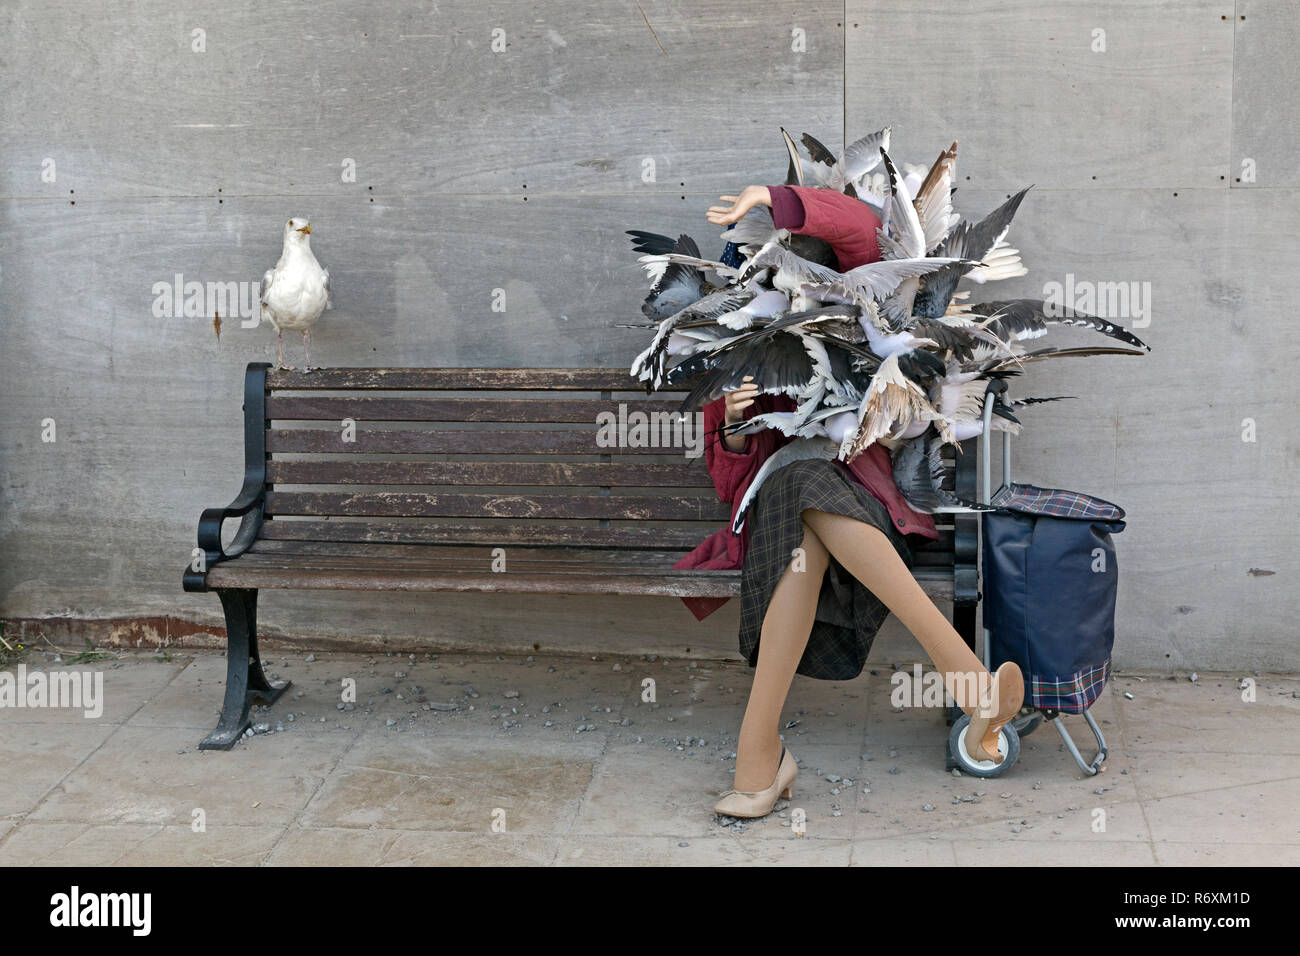 Une sculpture d'oiseaux qui attaquent une femme dans une scène qui rappelle le film d'Hitchcock "Les Oiseaux" à l'exposition de Banksy, Dismaland, 10 septembre 2015. Banque D'Images